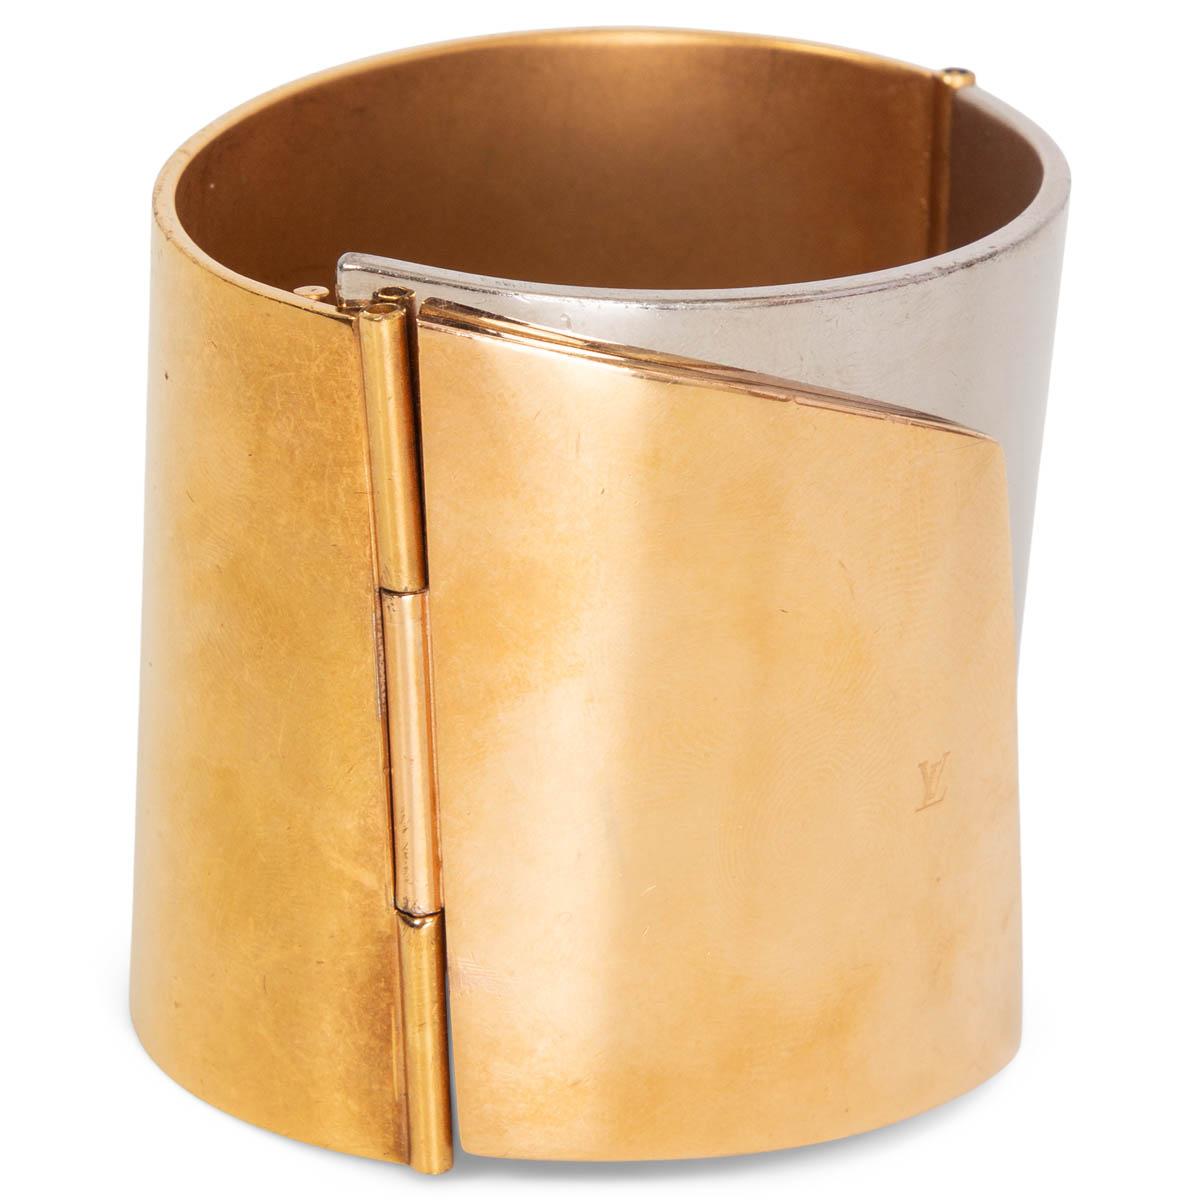 100% authentische Louis Vuitton 'My Epi' Manschette aus gold- und silberfarbenem Metall. Wird mit einem Magnetverschluss geöffnet. Wurde getragen und zeigt Verschleiß und Kratzer allover. Insgesamt in gutem Zustand. 

Messungen
Höhe	5cm